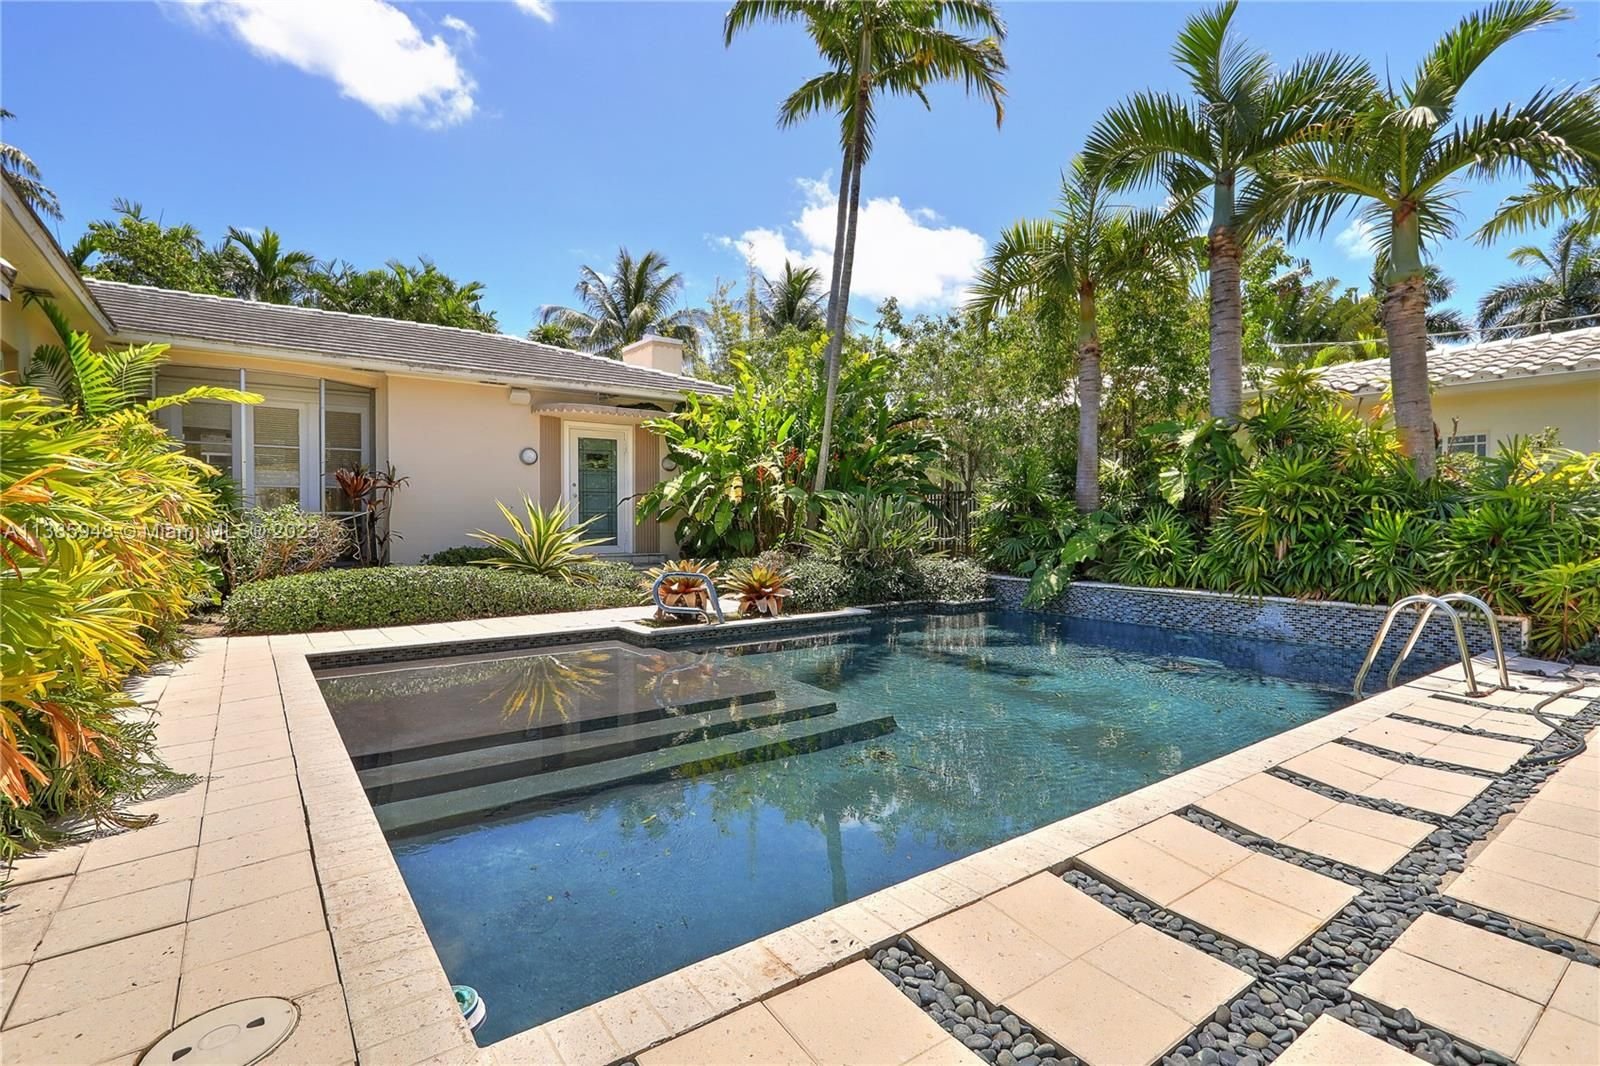 Real estate property located at 5925 La Gorce Dr, Miami-Dade County, Miami Beach, FL